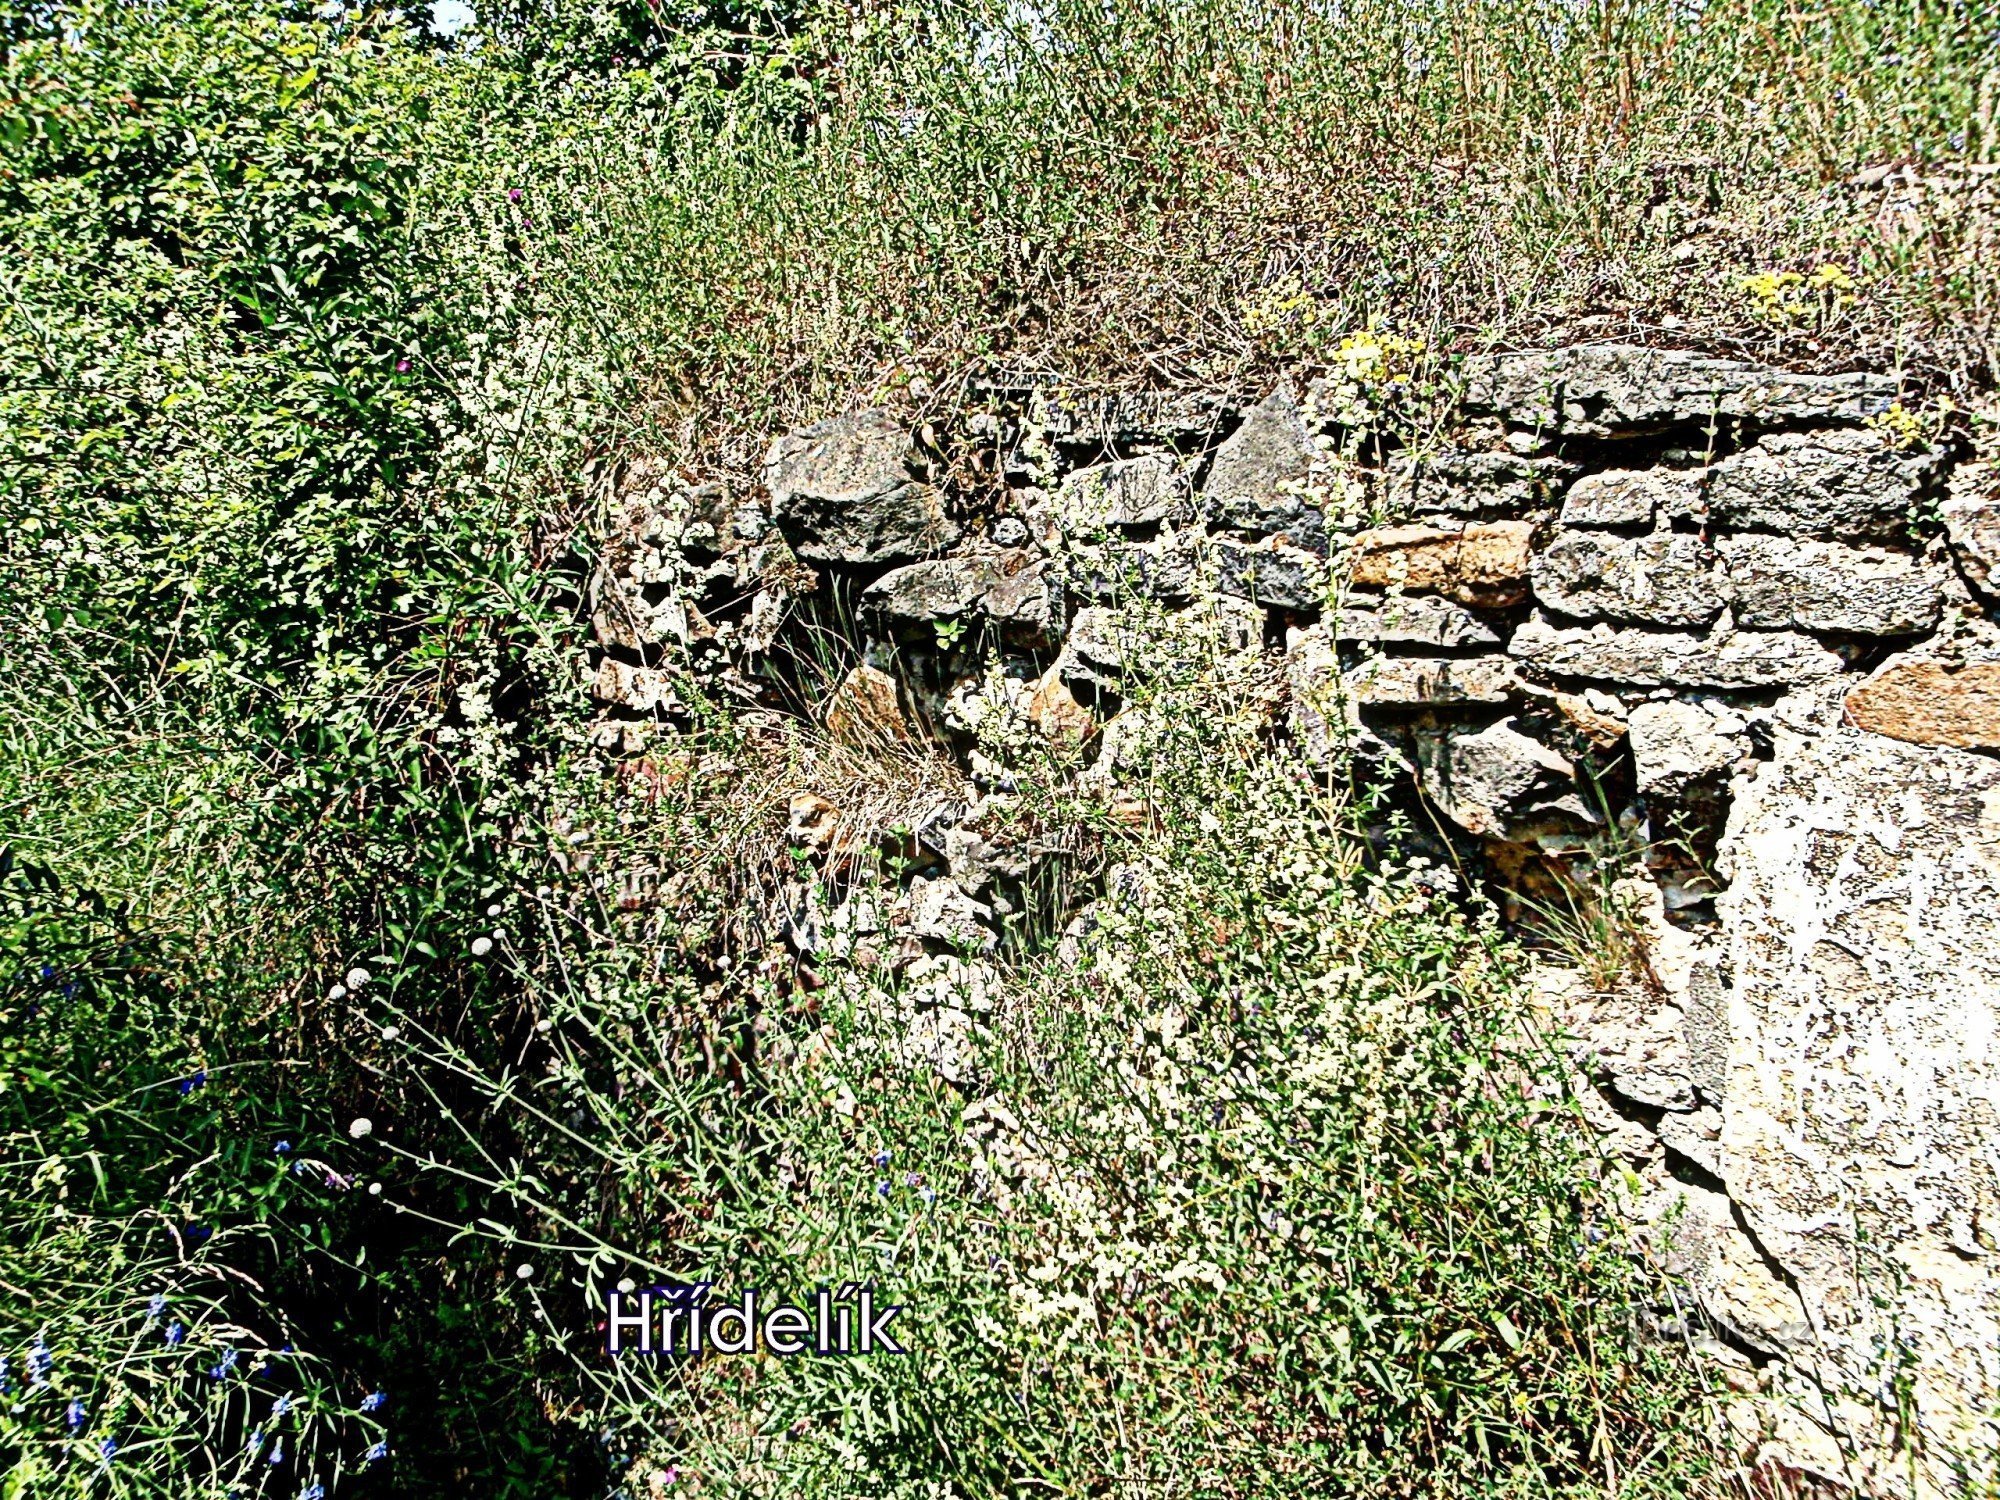 Blíževedly - ruiny zamku Hřídelík